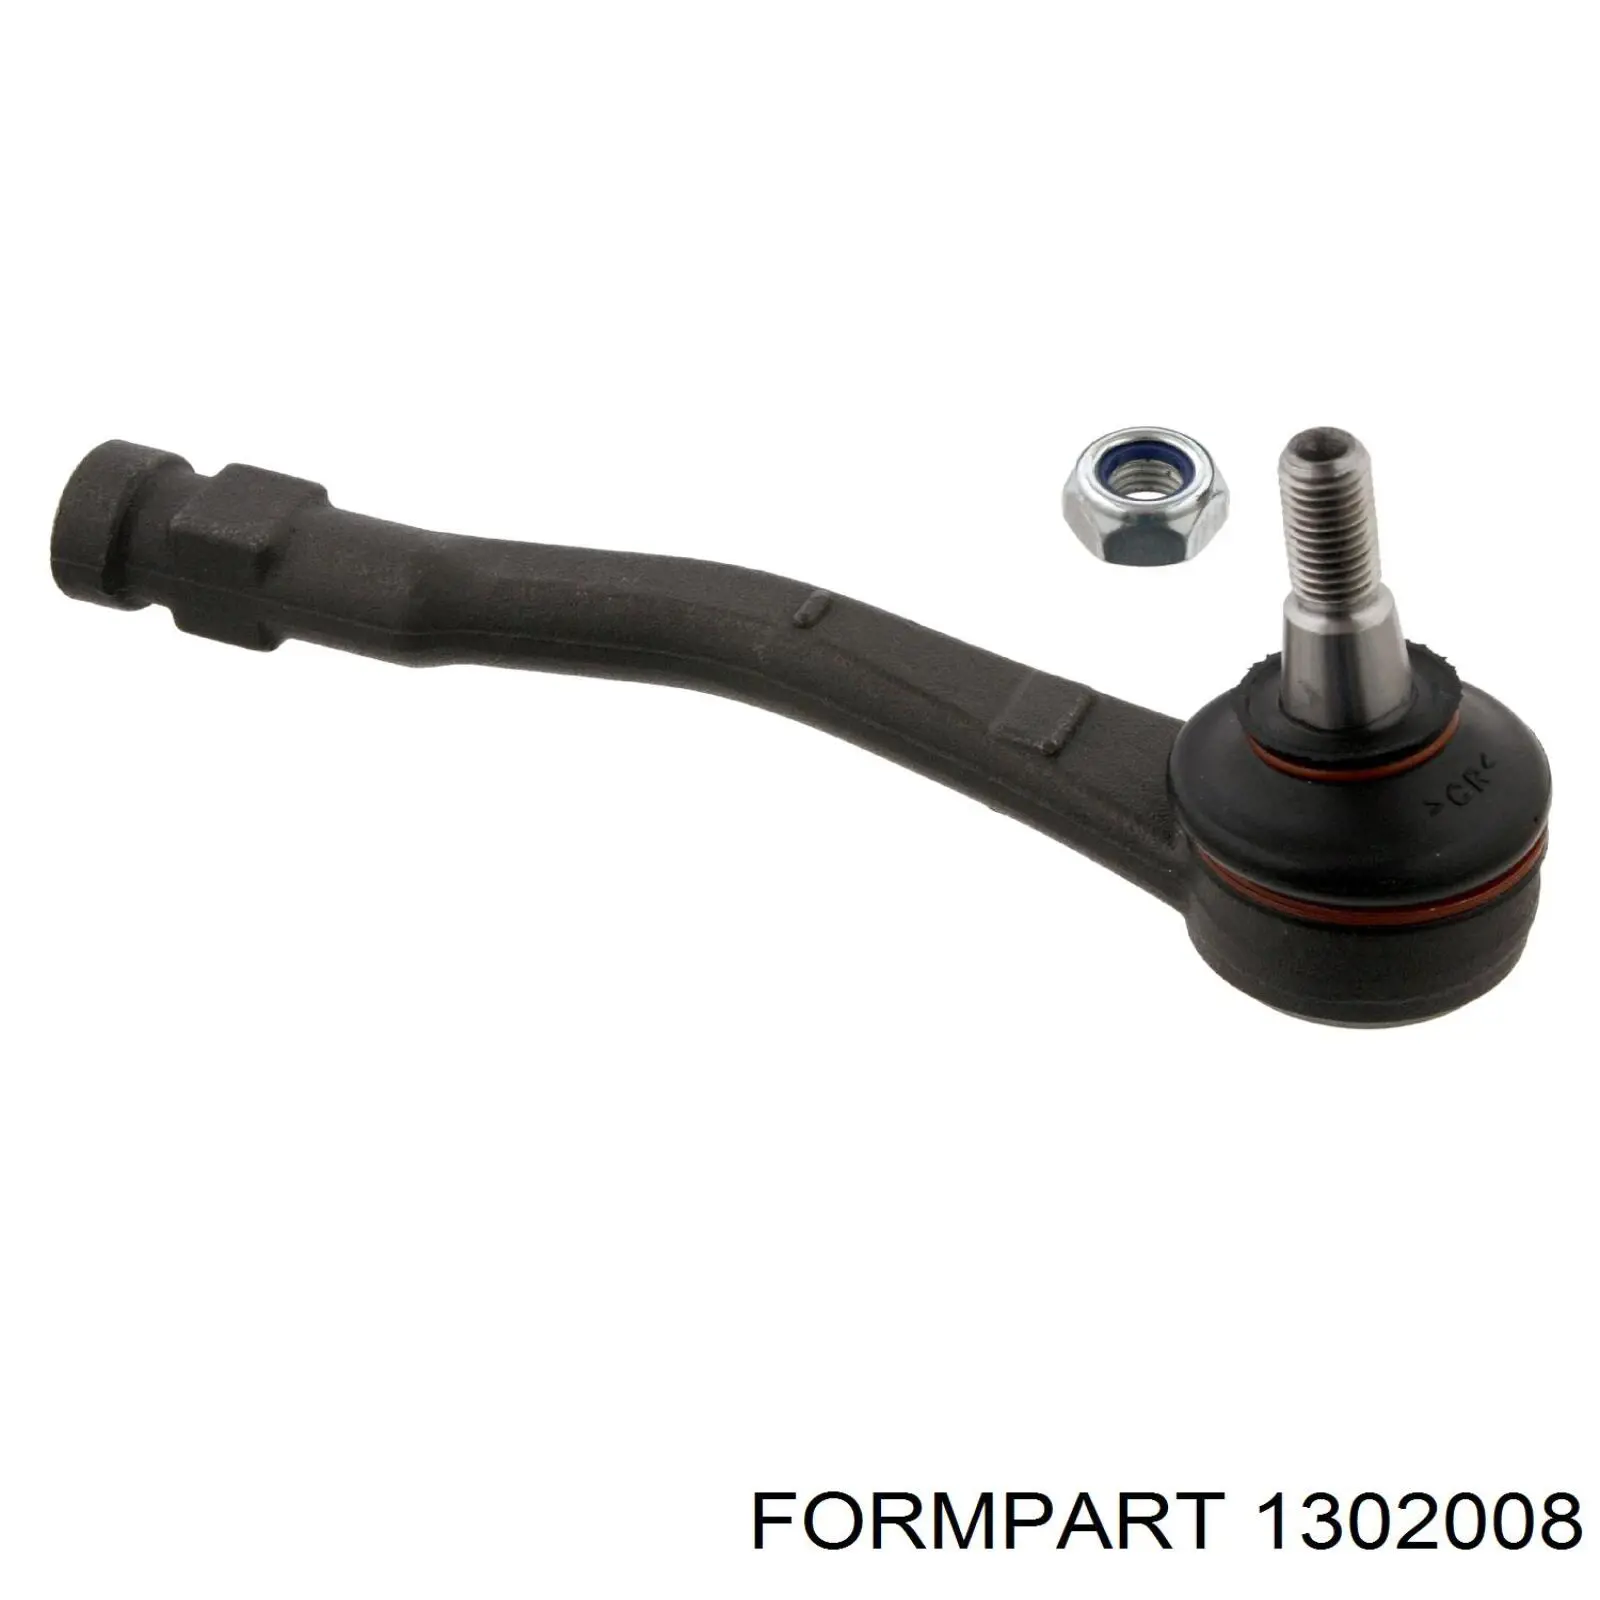 1302008 Formpart/Otoform rótula barra de acoplamiento exterior